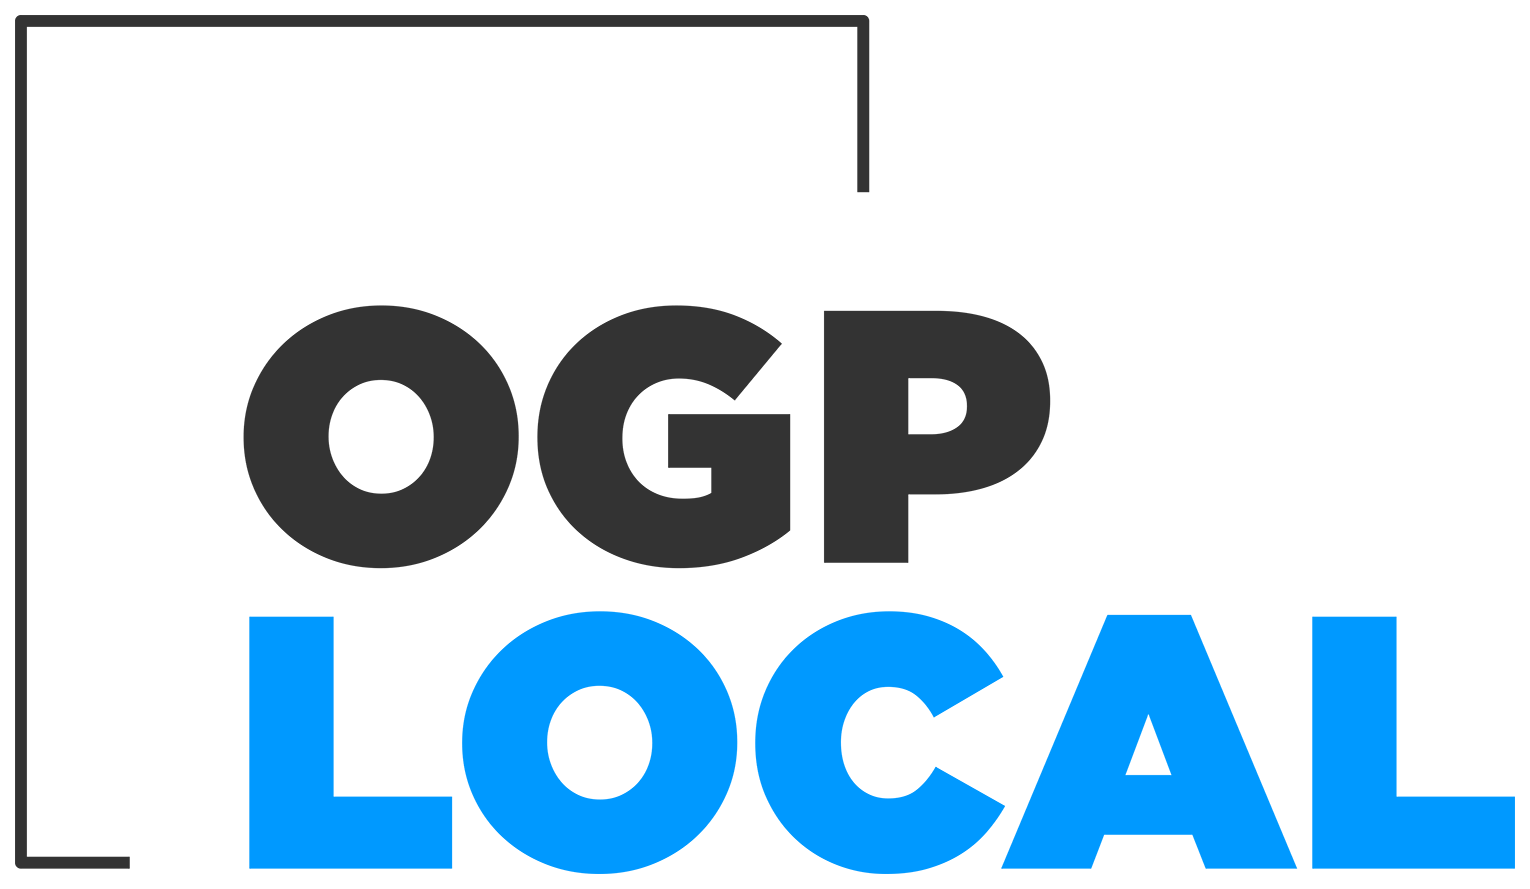 Logoogplocal.png